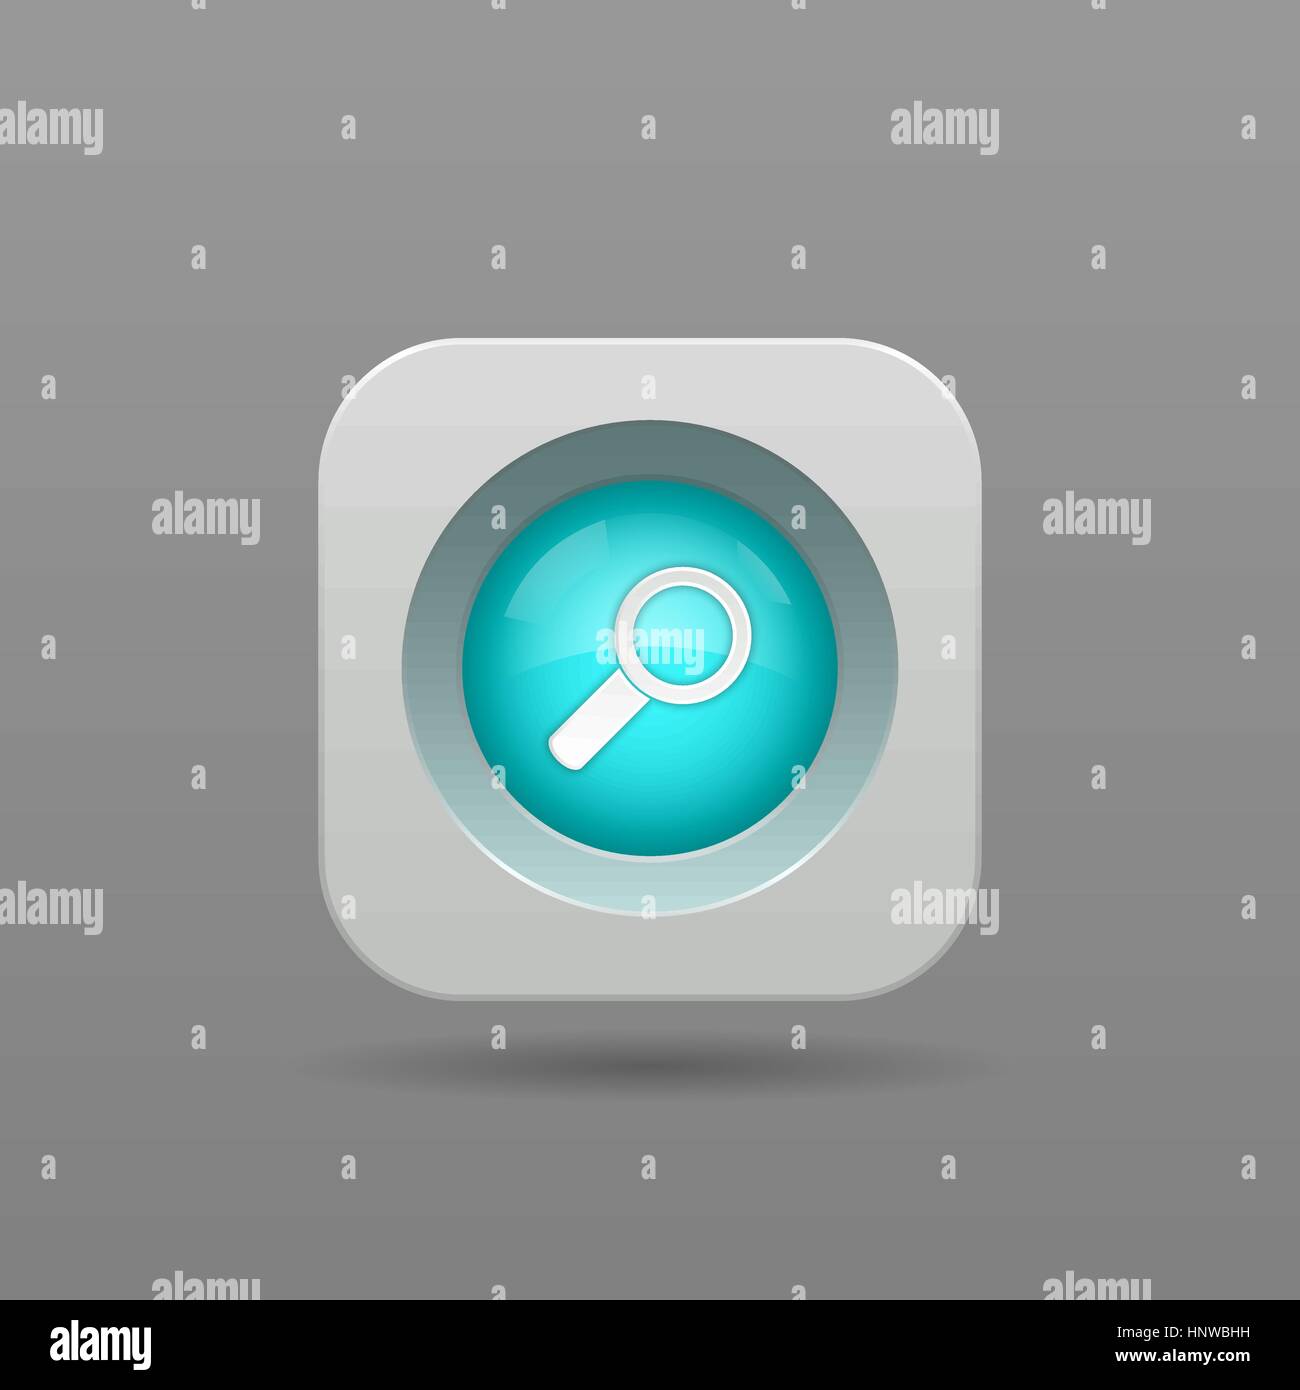 Search Button - Vector App Icon Stock Vector